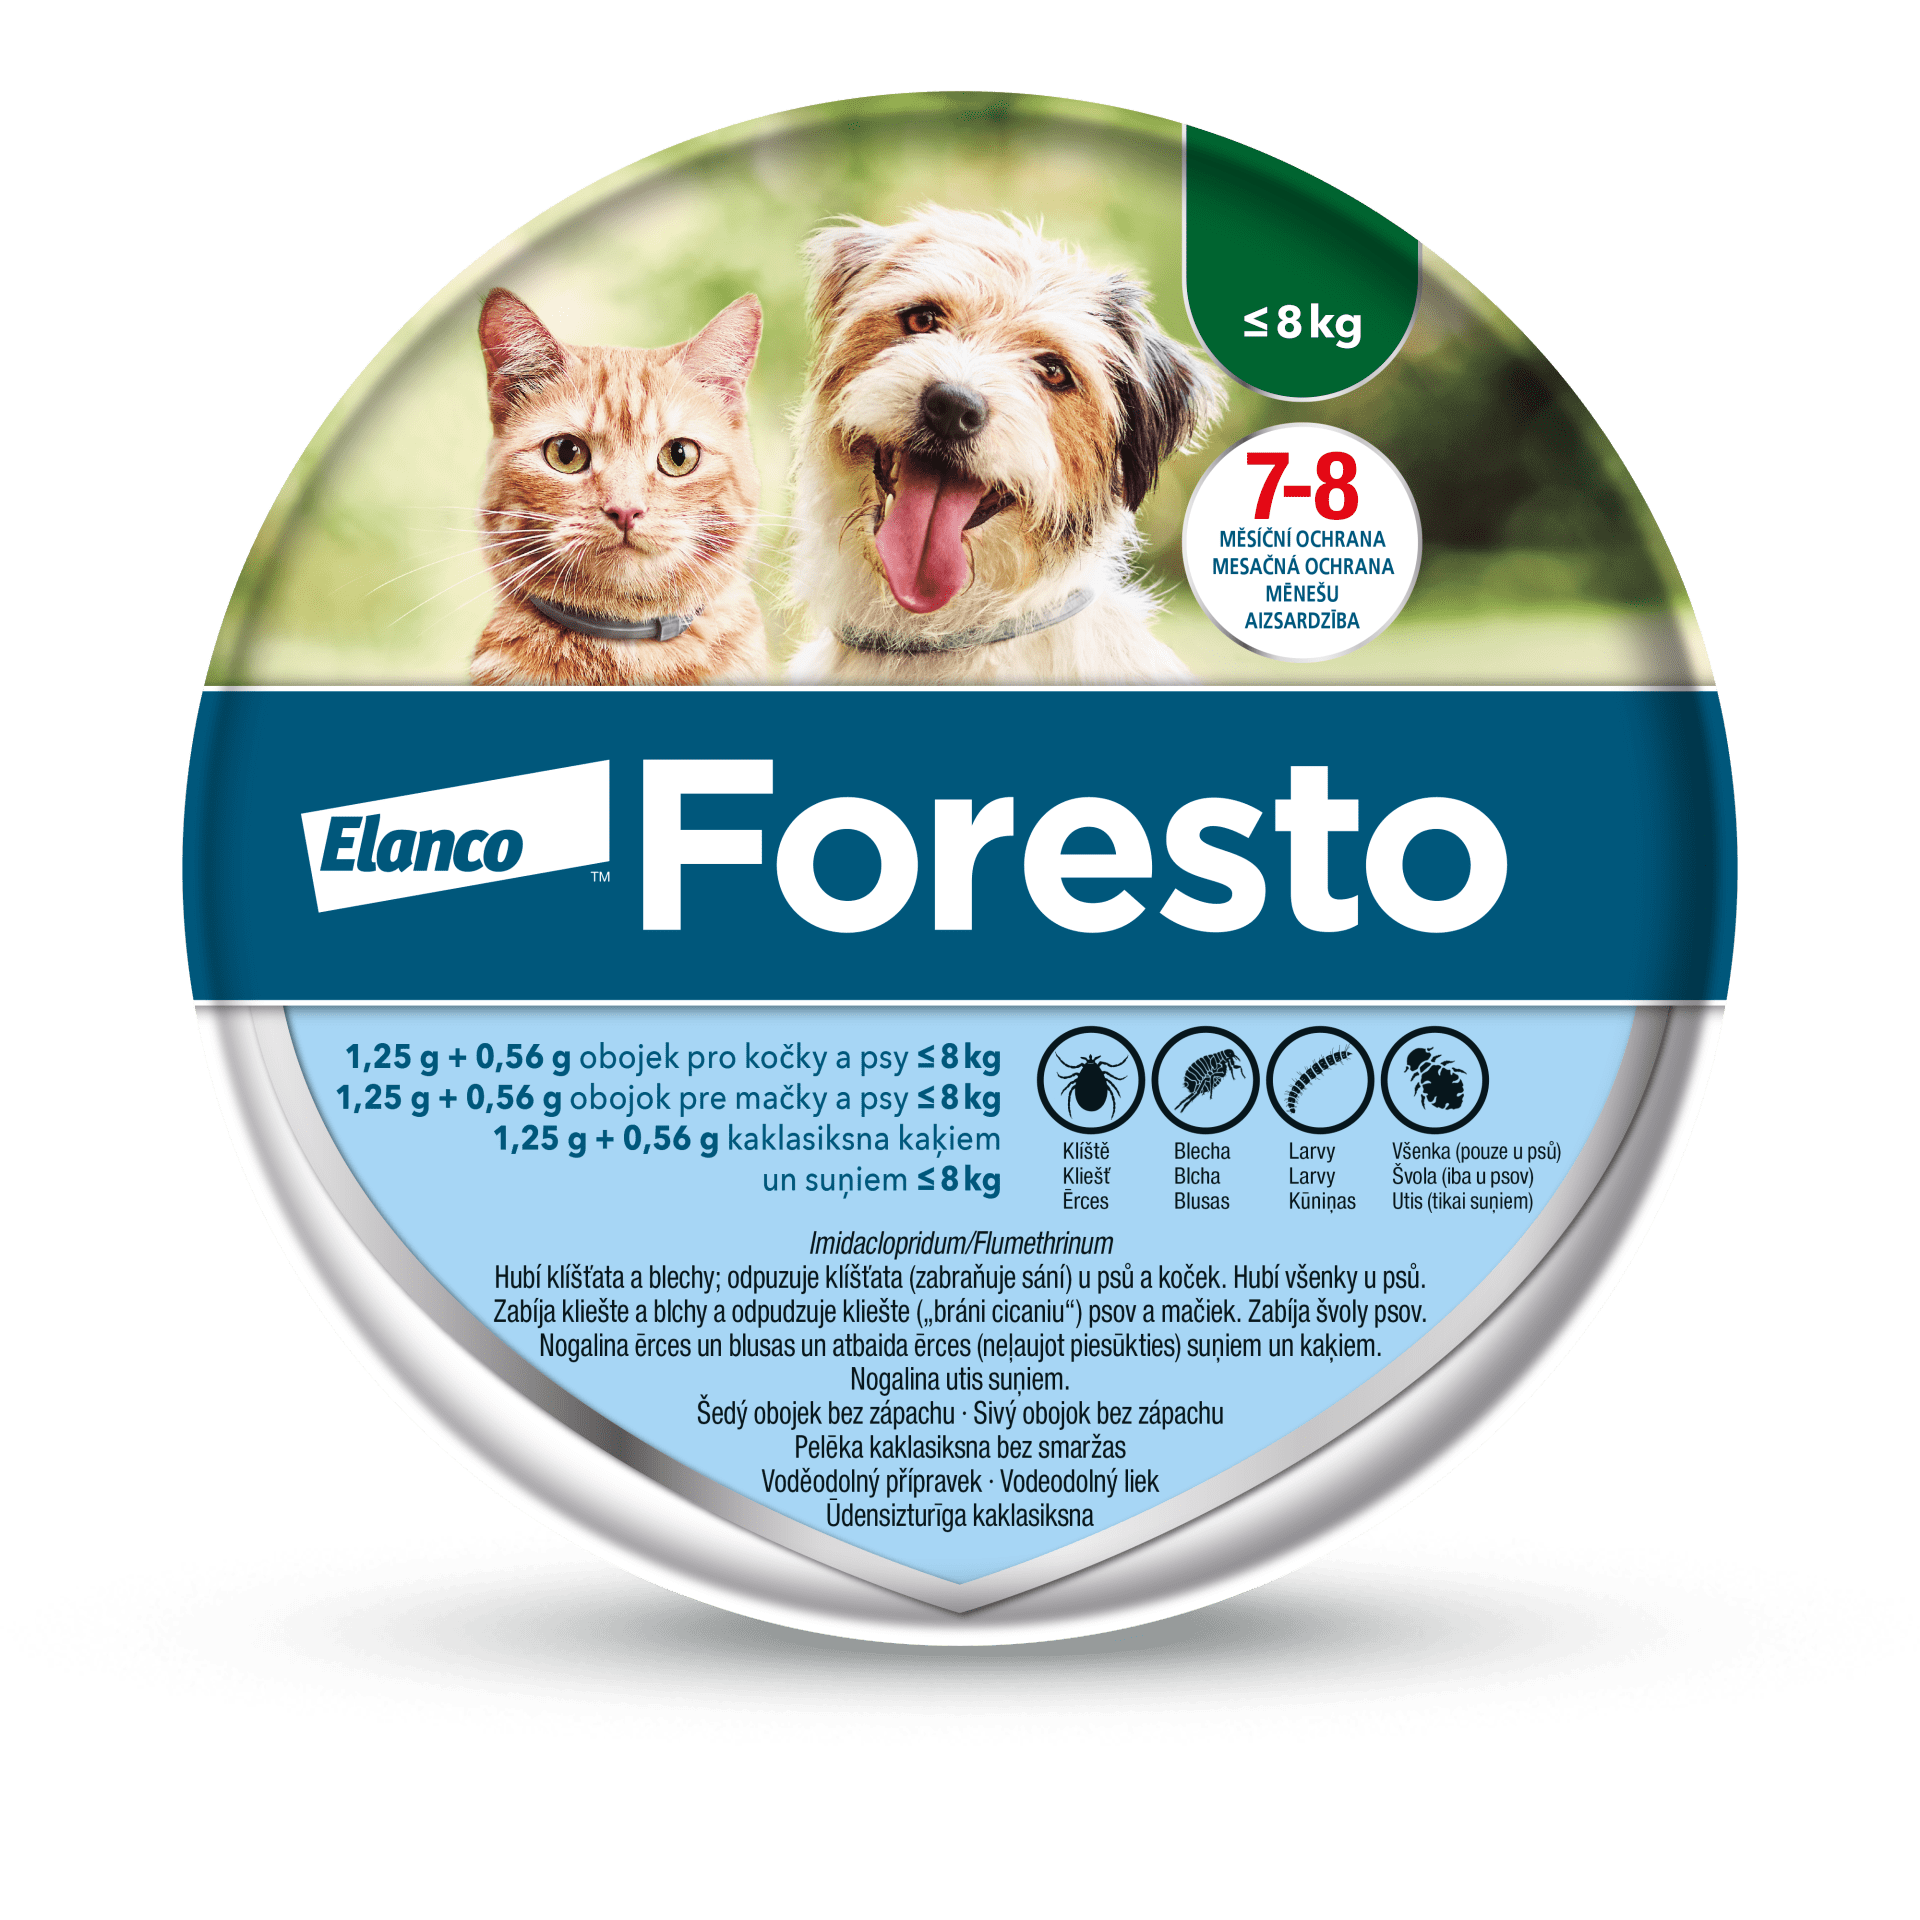 Antiparazitní obojek Foresto je veterinární léčivý přípravek. Před použitím čtěte pečlivě příbalové informace.